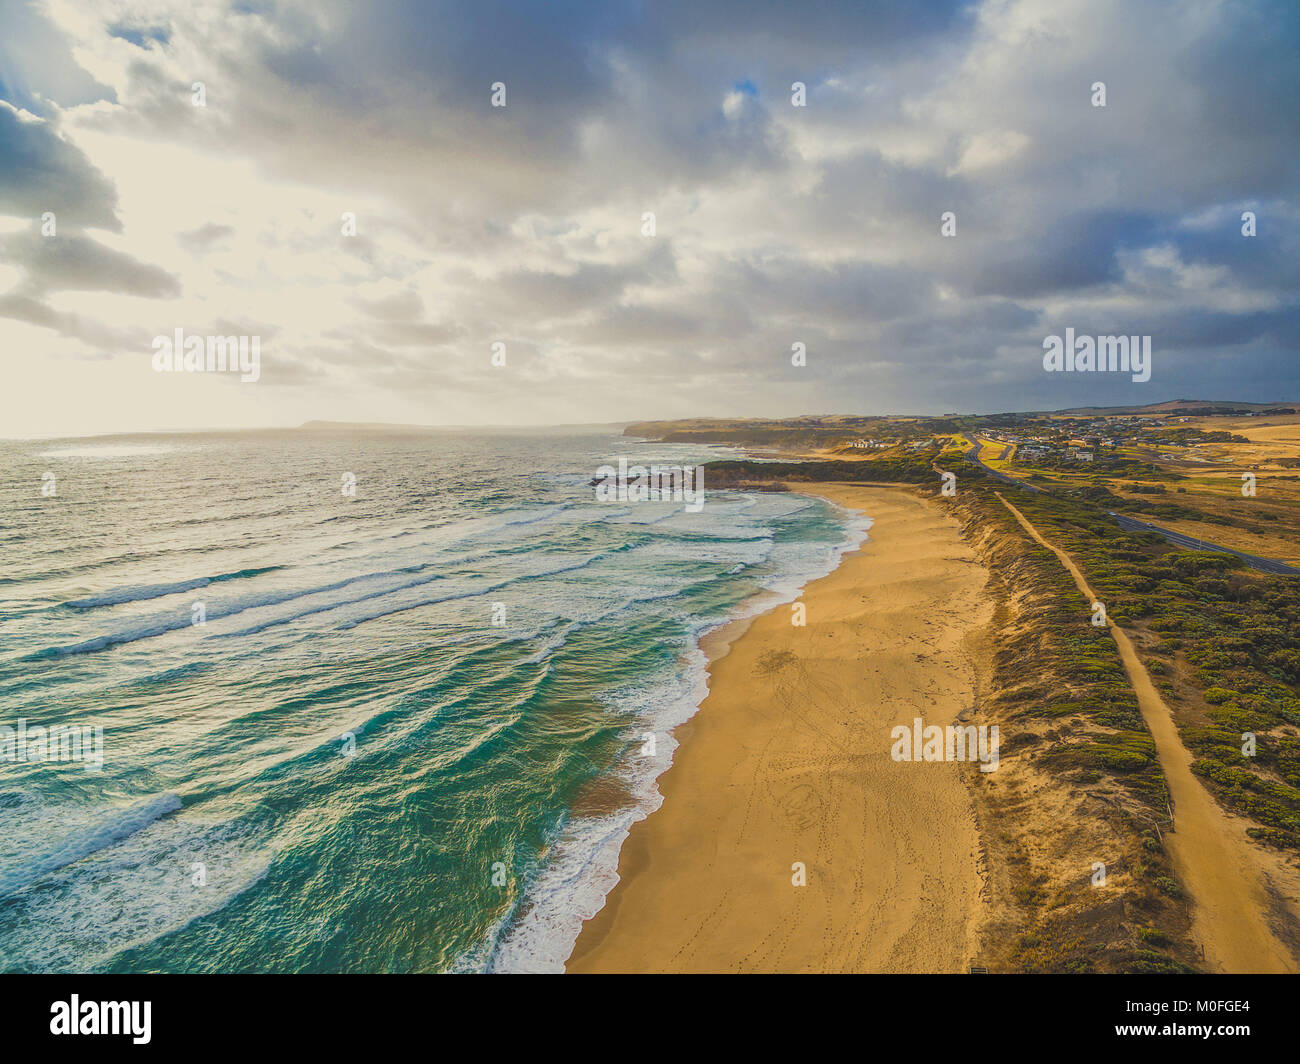 Suggestivo panorama della fascia costiera sull'oceano giallo con spiaggia di sabbia e nelle aree rurali. Kilcunda, Victoria, Australia Foto Stock